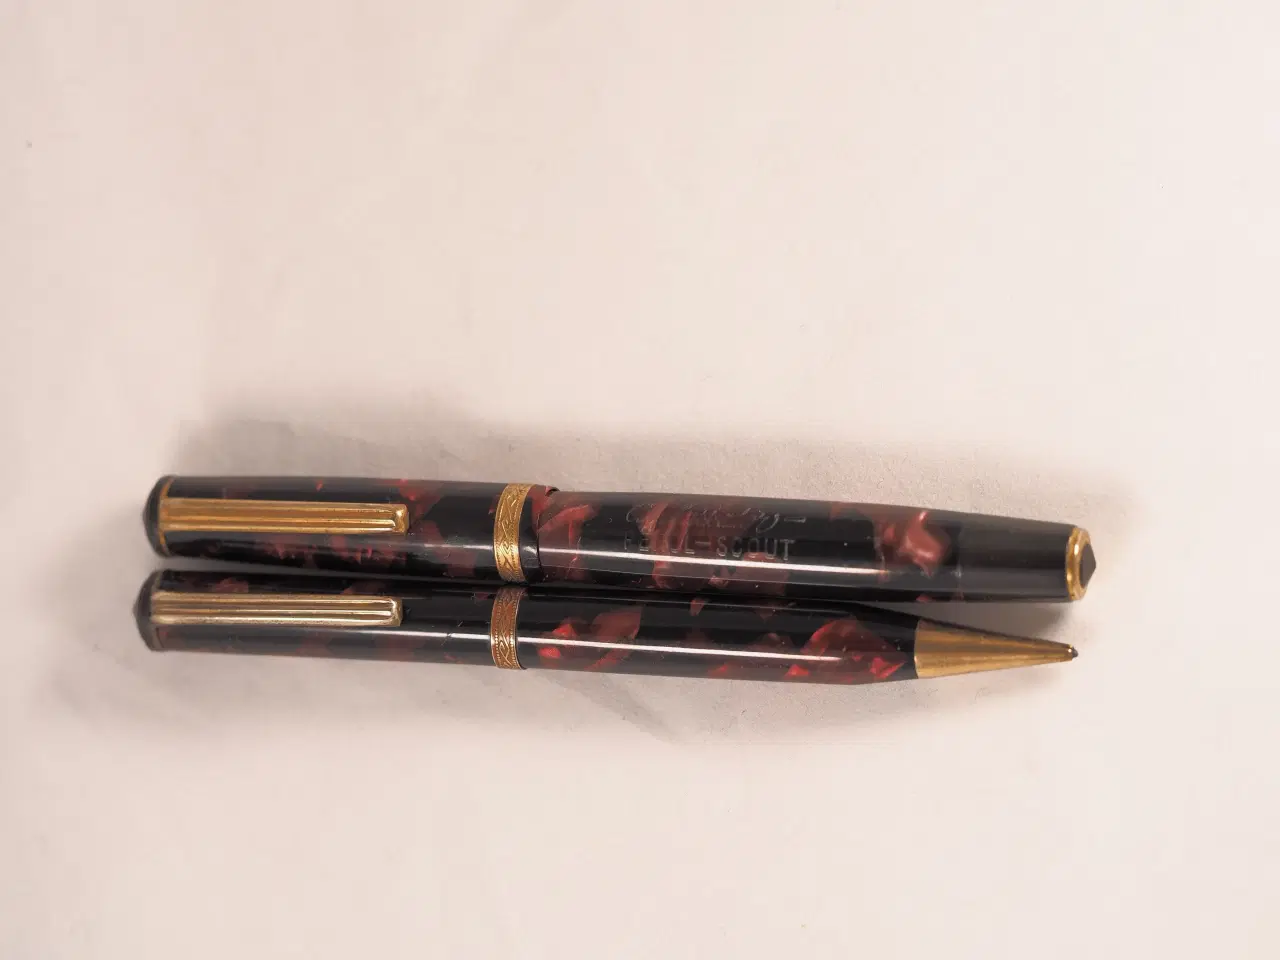 Billede 1 - Gamle fyldepenne købes af samler